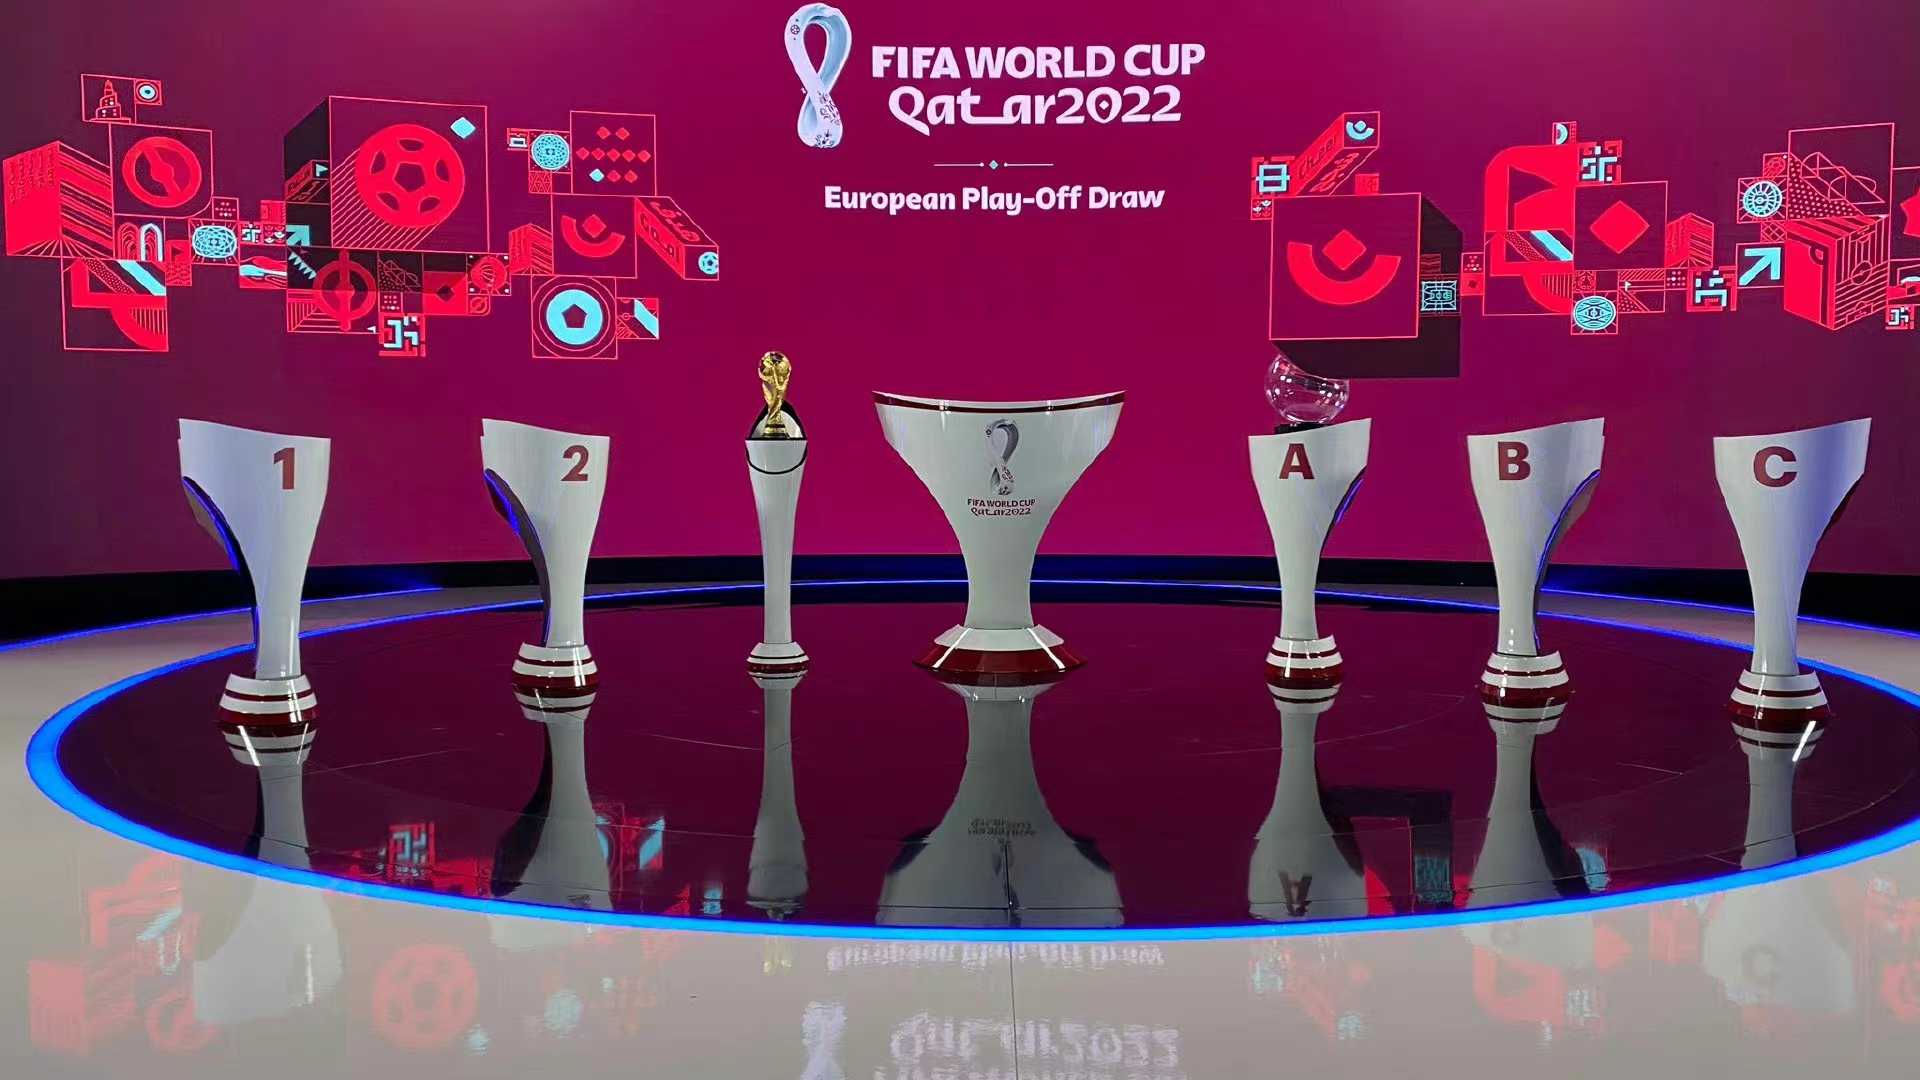 卡塔尔世界杯预选赛欧洲区附加赛和洲际附加赛抽签结果揭晓